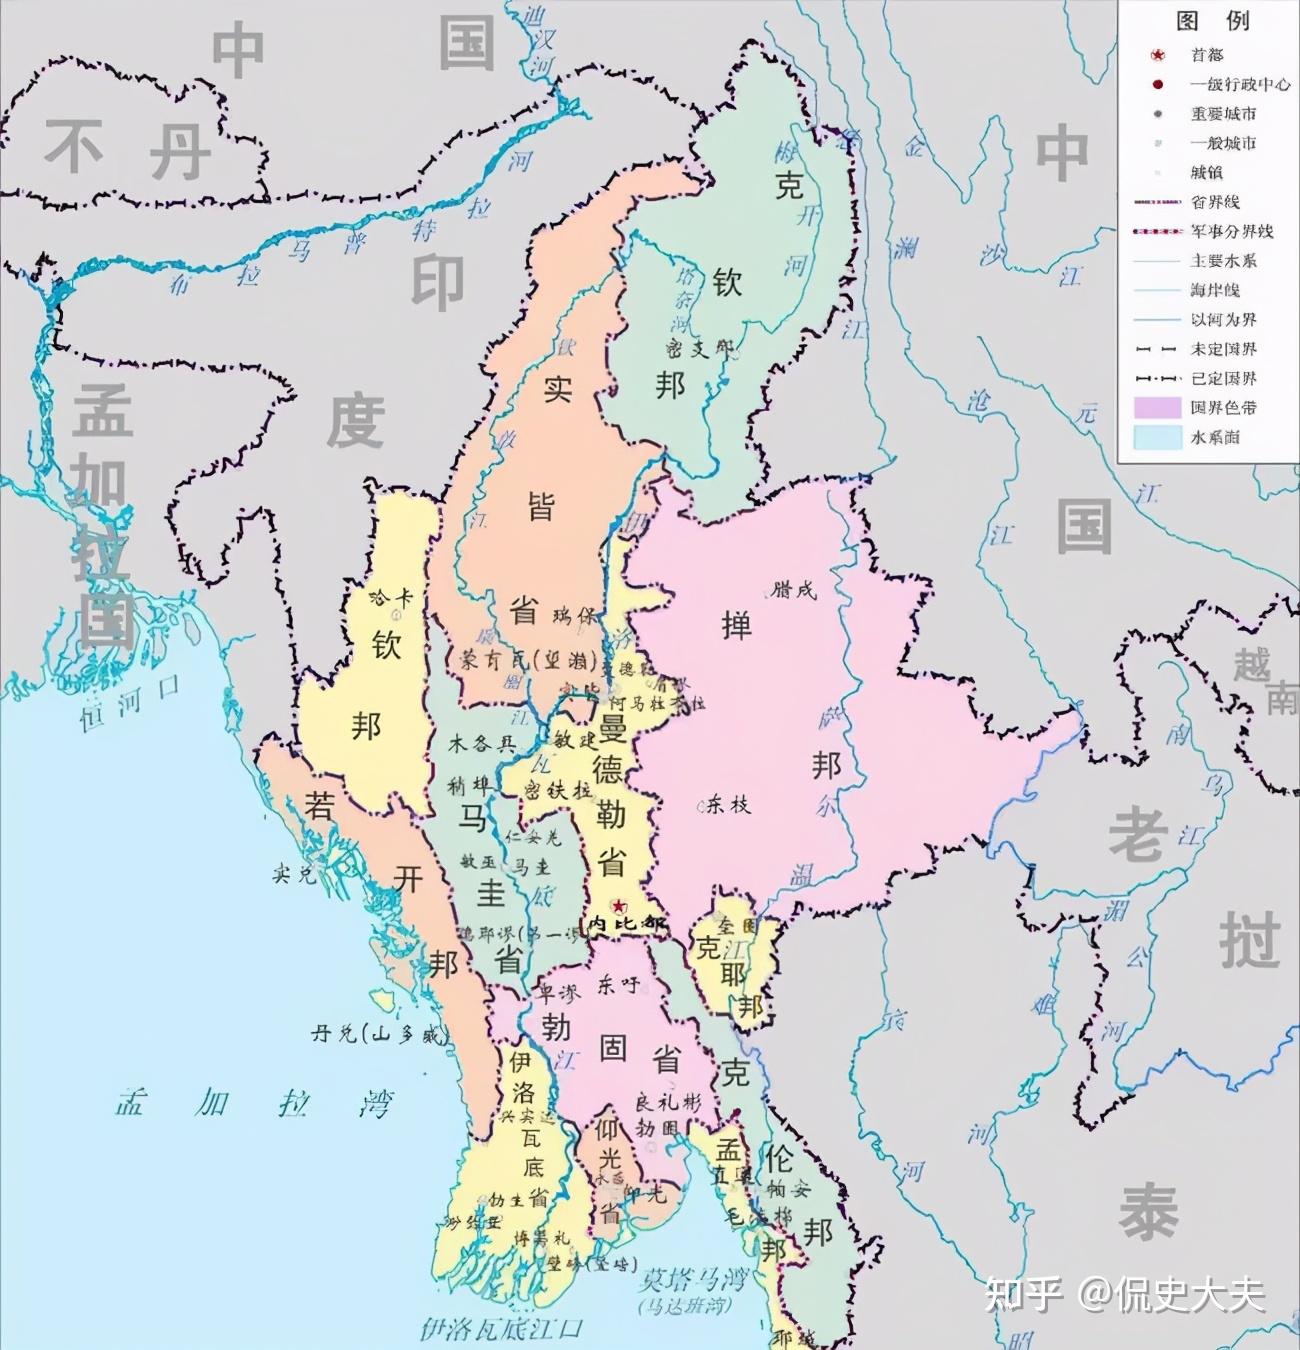 缅甸位于亚洲东南部,中南半岛西部,其北部和东北部同中国西藏和云南